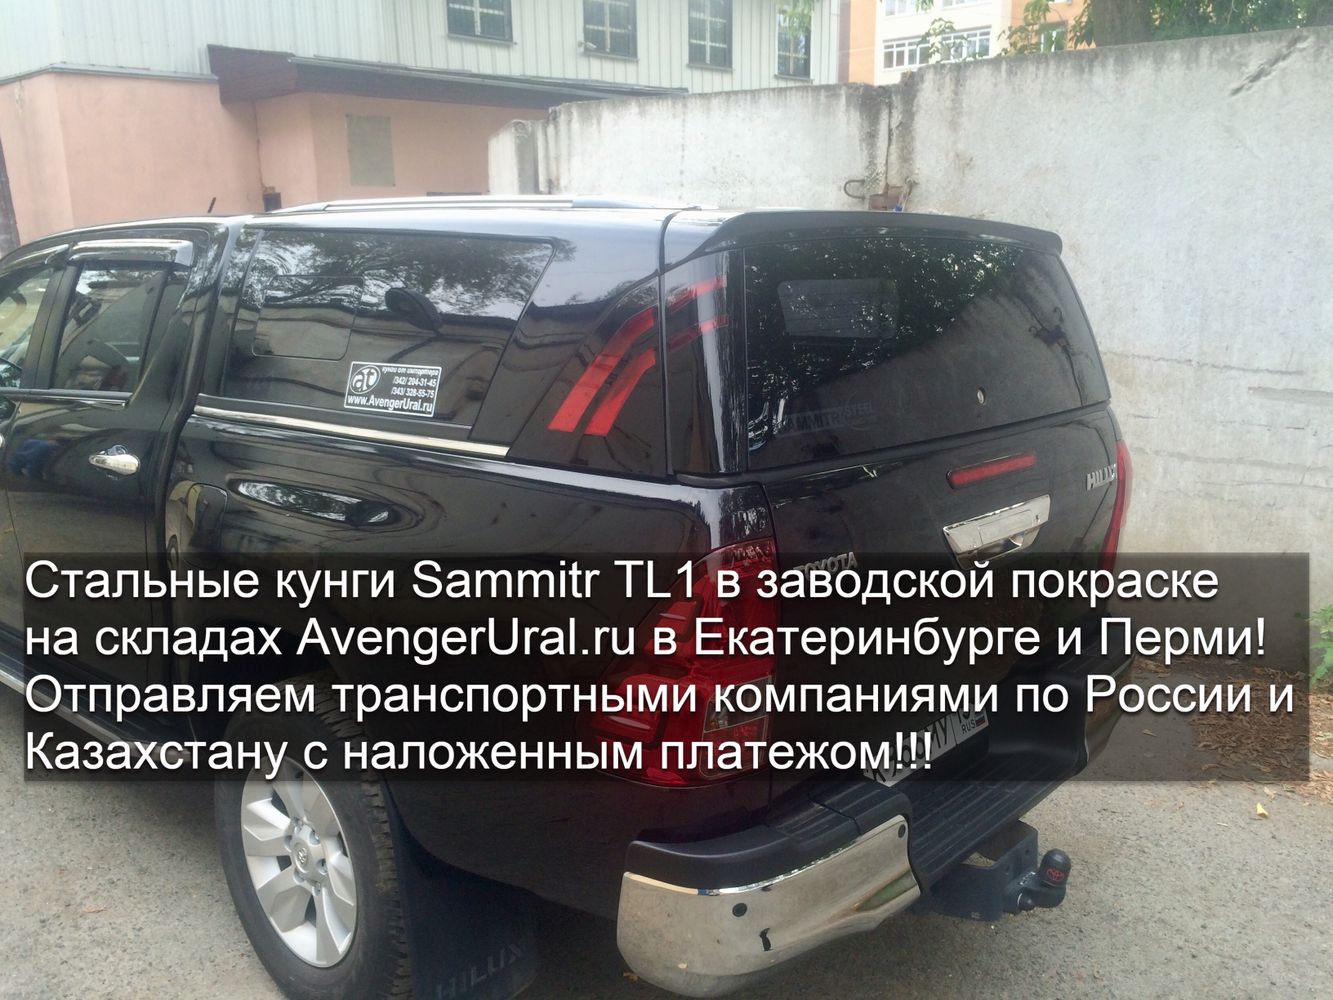 Кунги Sammitr TL1 в заводской покраске на Toyota Hilux Revo в наличии в Екатеринбурге и Перми! Отправка по России и Казахстану с наложенным платежом!